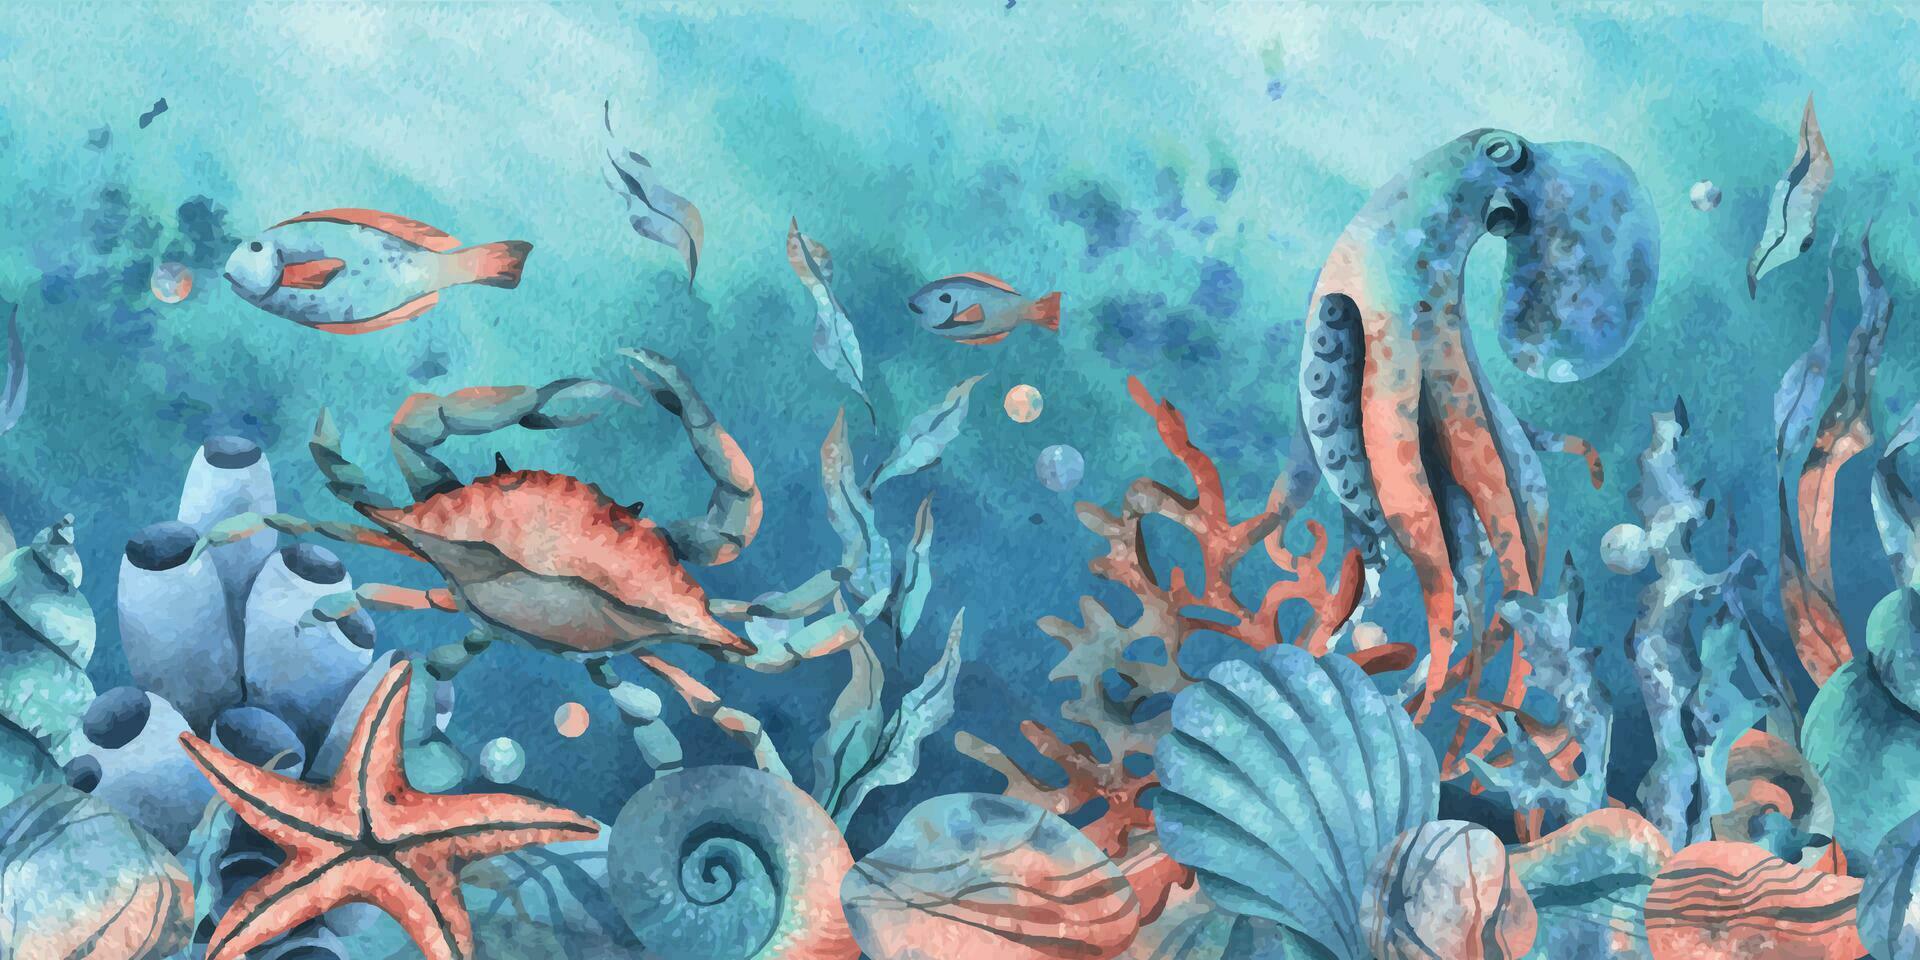 onderwater- wereld clip art met zee dieren walvis, schildpad, Octopus, zeepaardje, zeester, schelpen, koraal en algen. hand- getrokken waterverf illustratie. naadloos grens Aan een marinier achtergrond vector